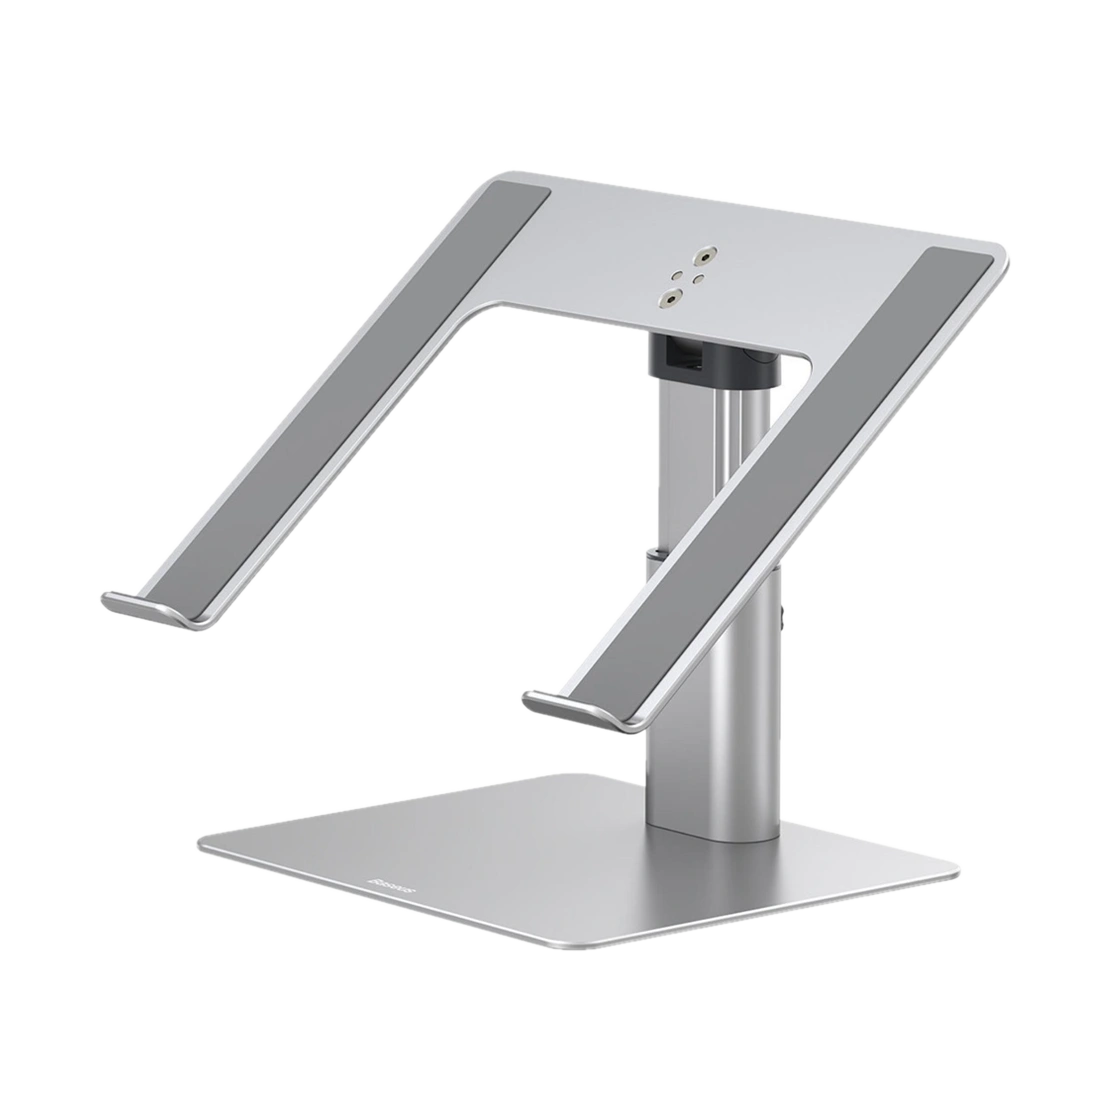 استند رومیزی مک بوک بیسوس مدل Adjustable Laptop Stand